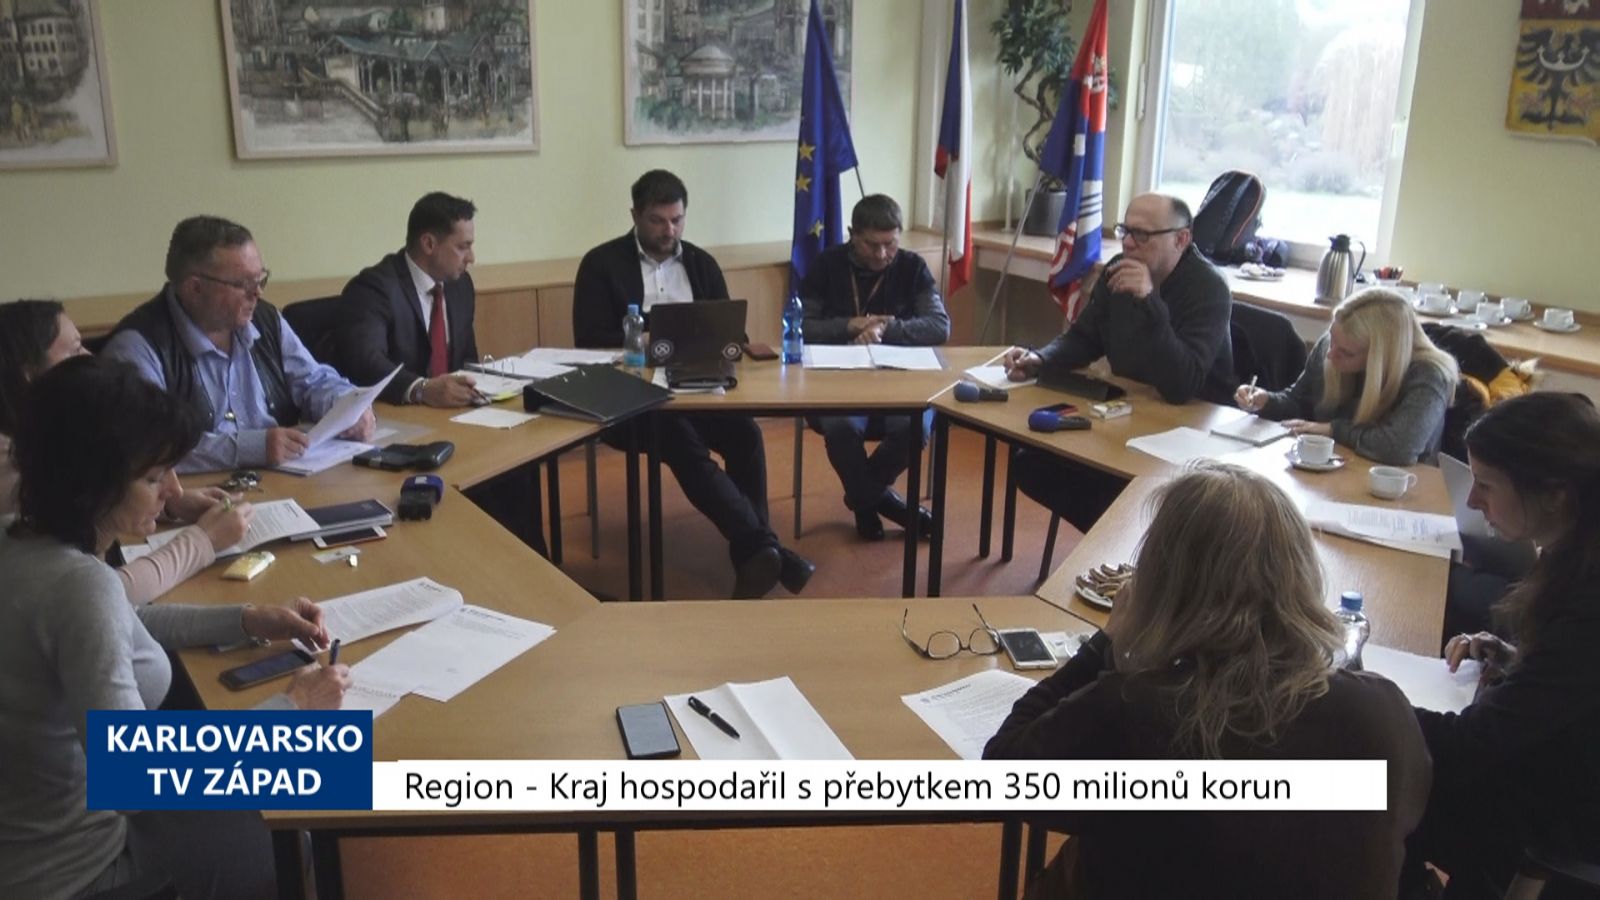 Region: Kraj hospodařil s přebytkem 350 milionů (TV Západ)